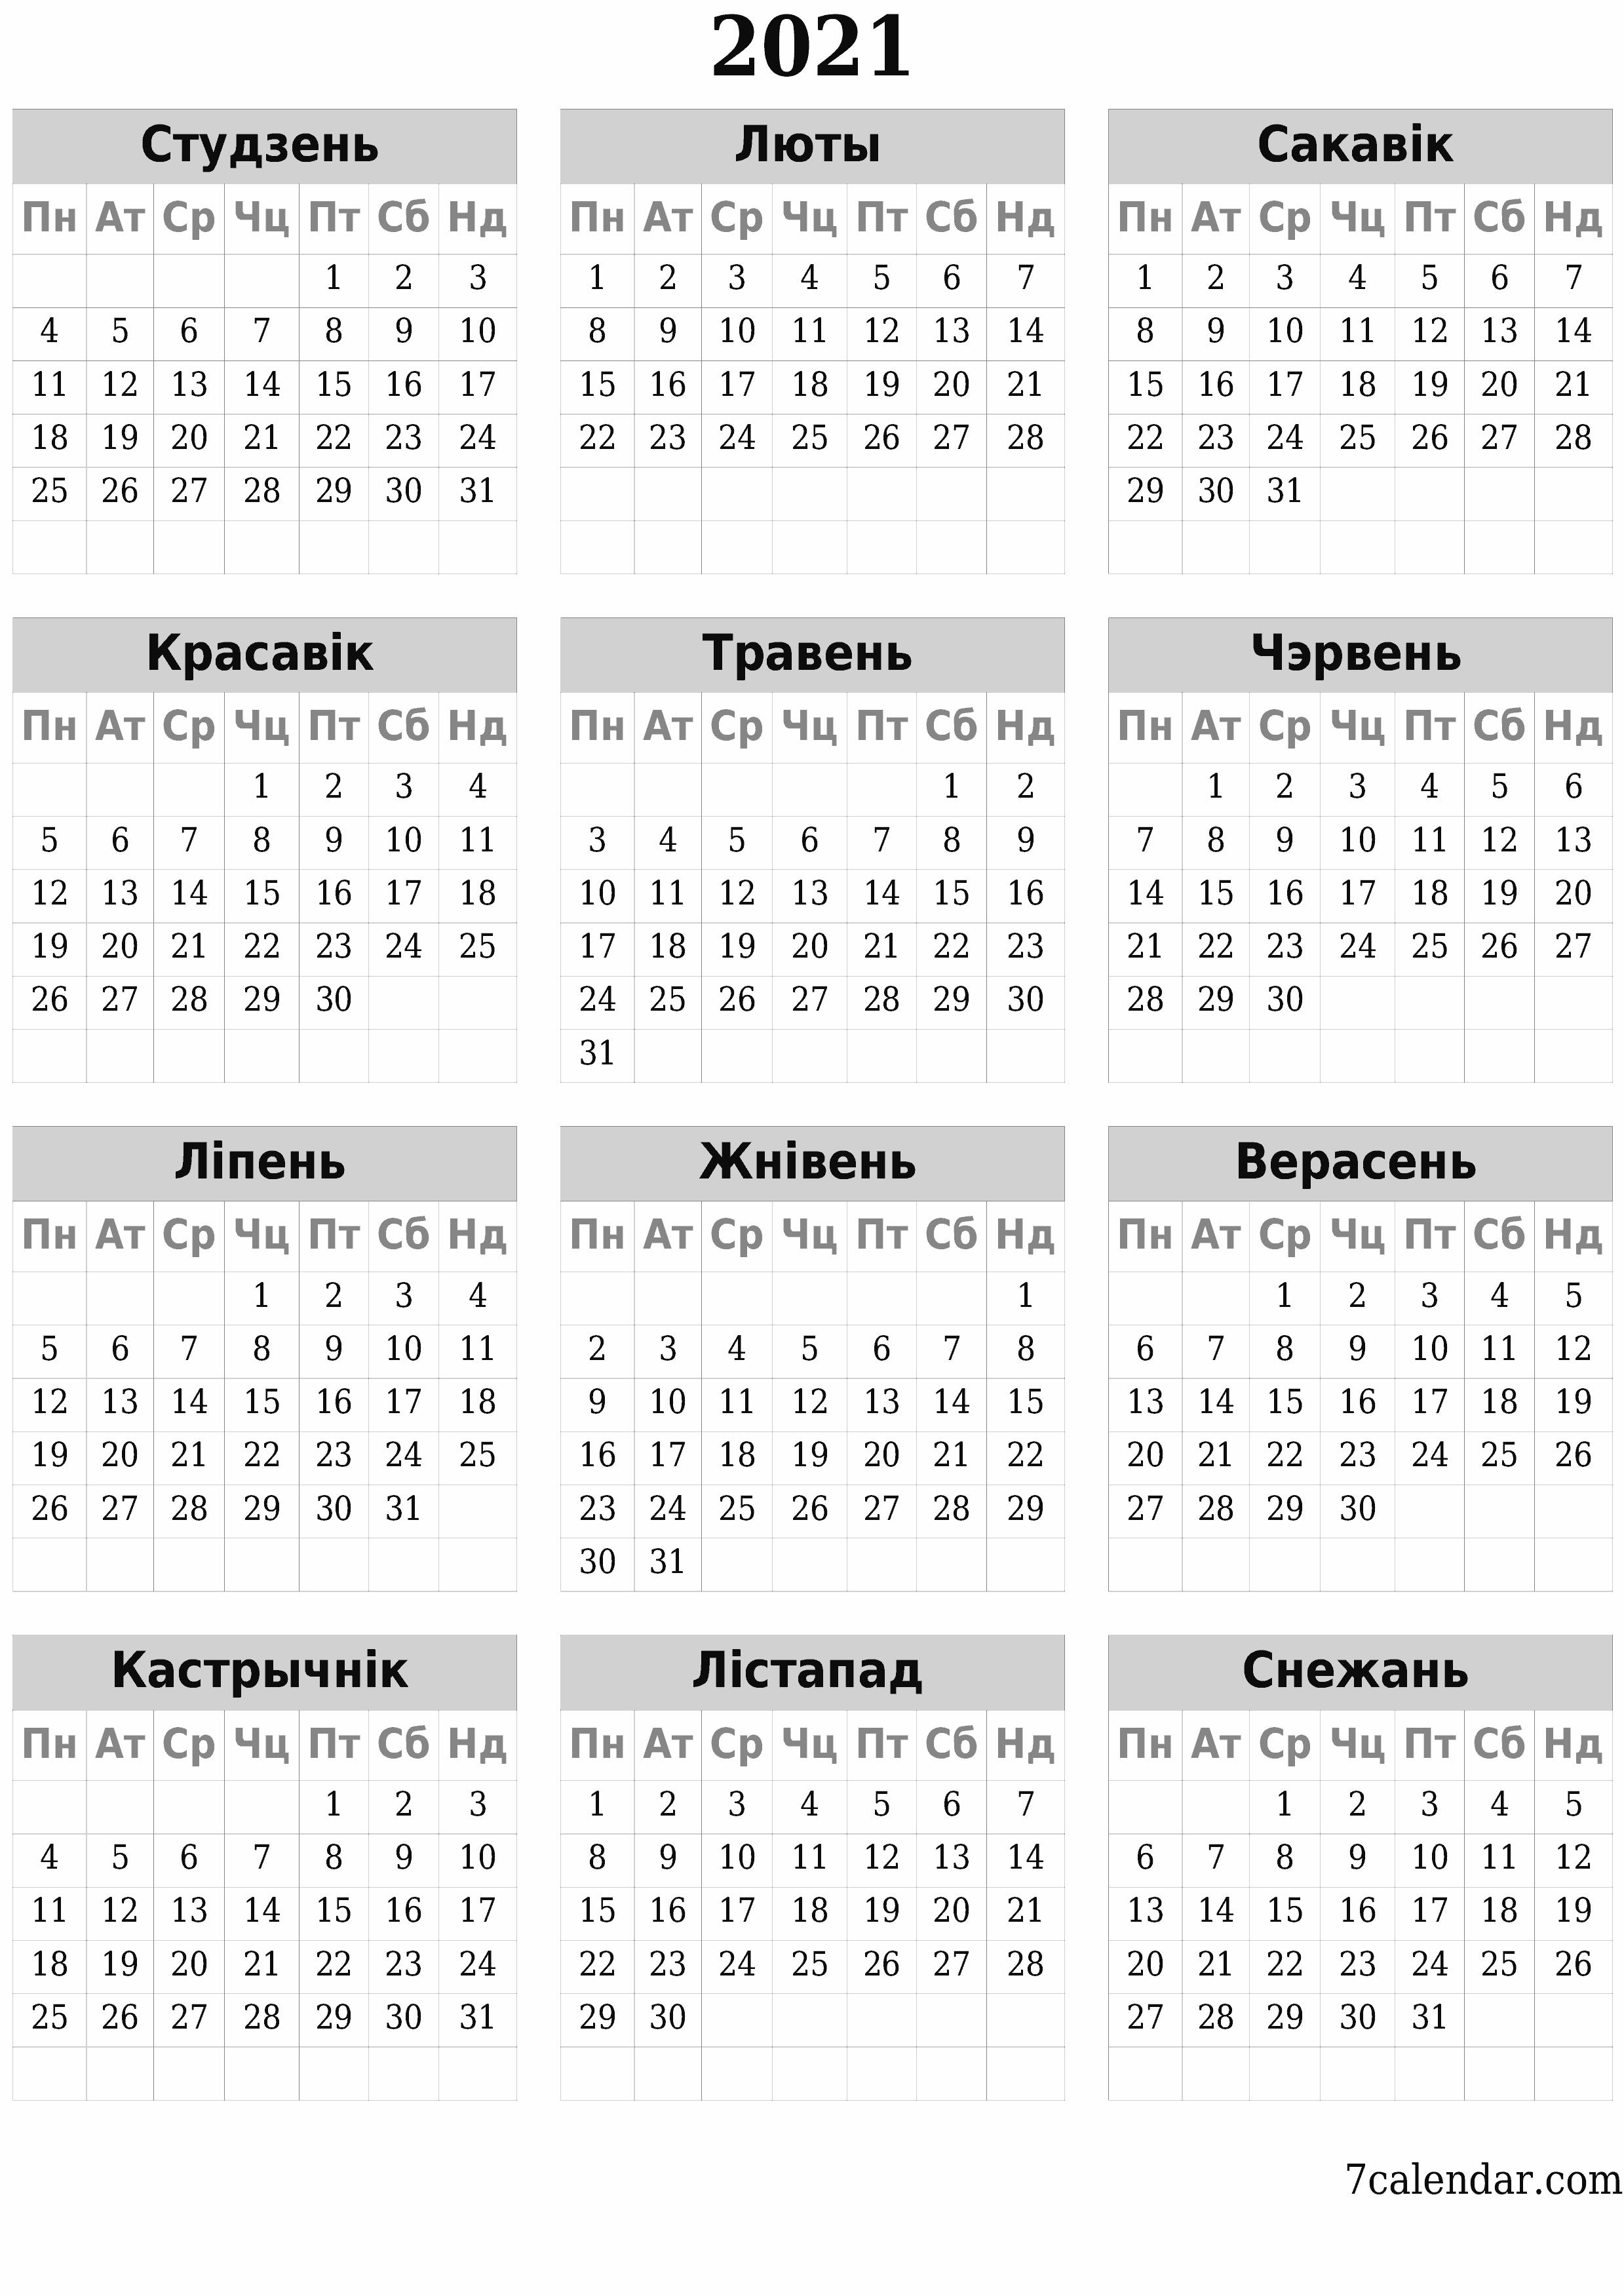  для друку насценны шаблон календара бясплатны вертыкальны Штогадовы каляндар Снежань (Снеж) 2021